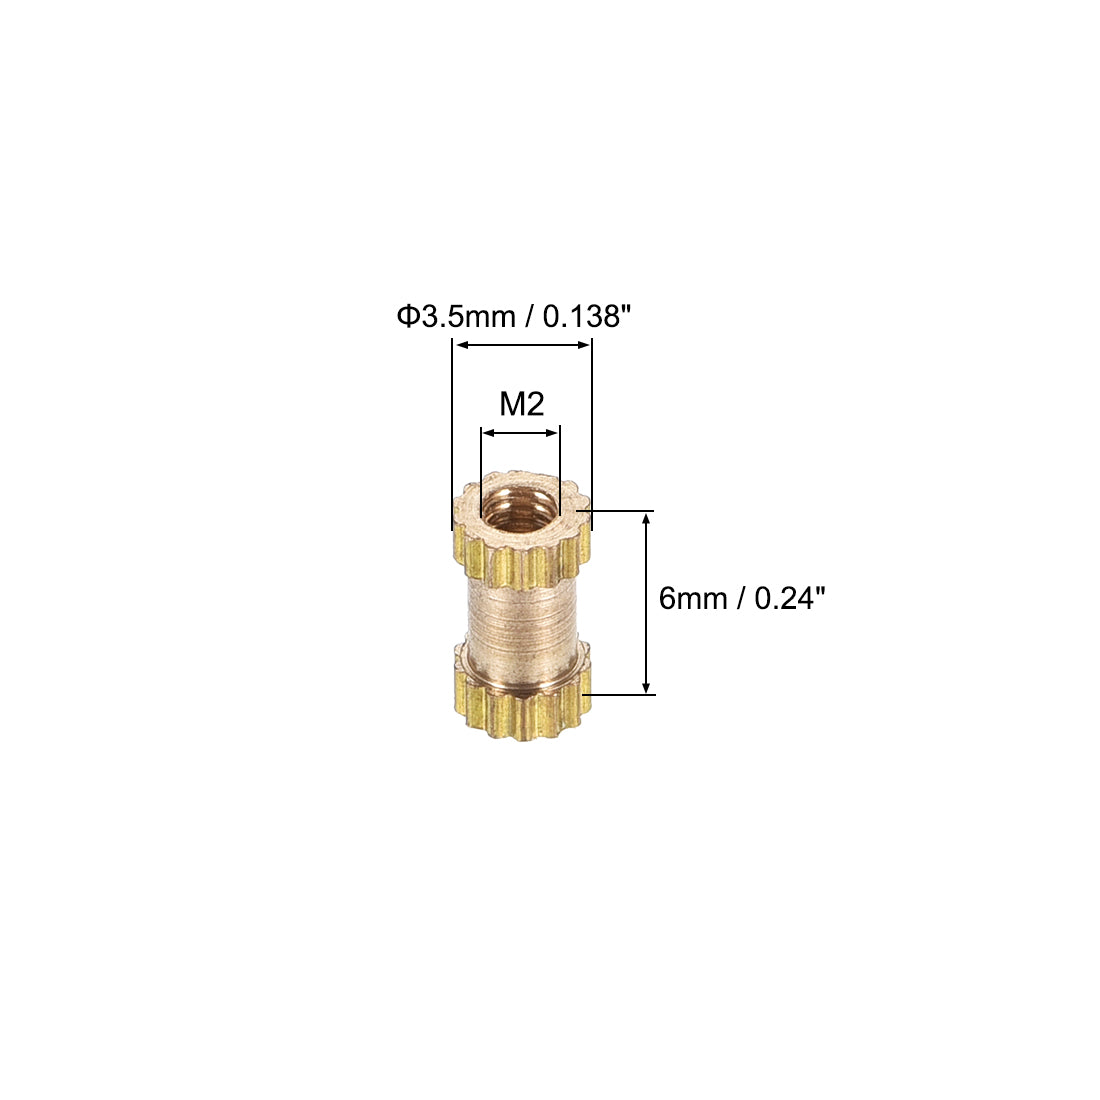 uxcell Uxcell Knurled Insert Nuts, M2 x 6mm(L) x 3.5mm(OD) Female Thread Brass Embedment Assortment Kit, 50 Pcs